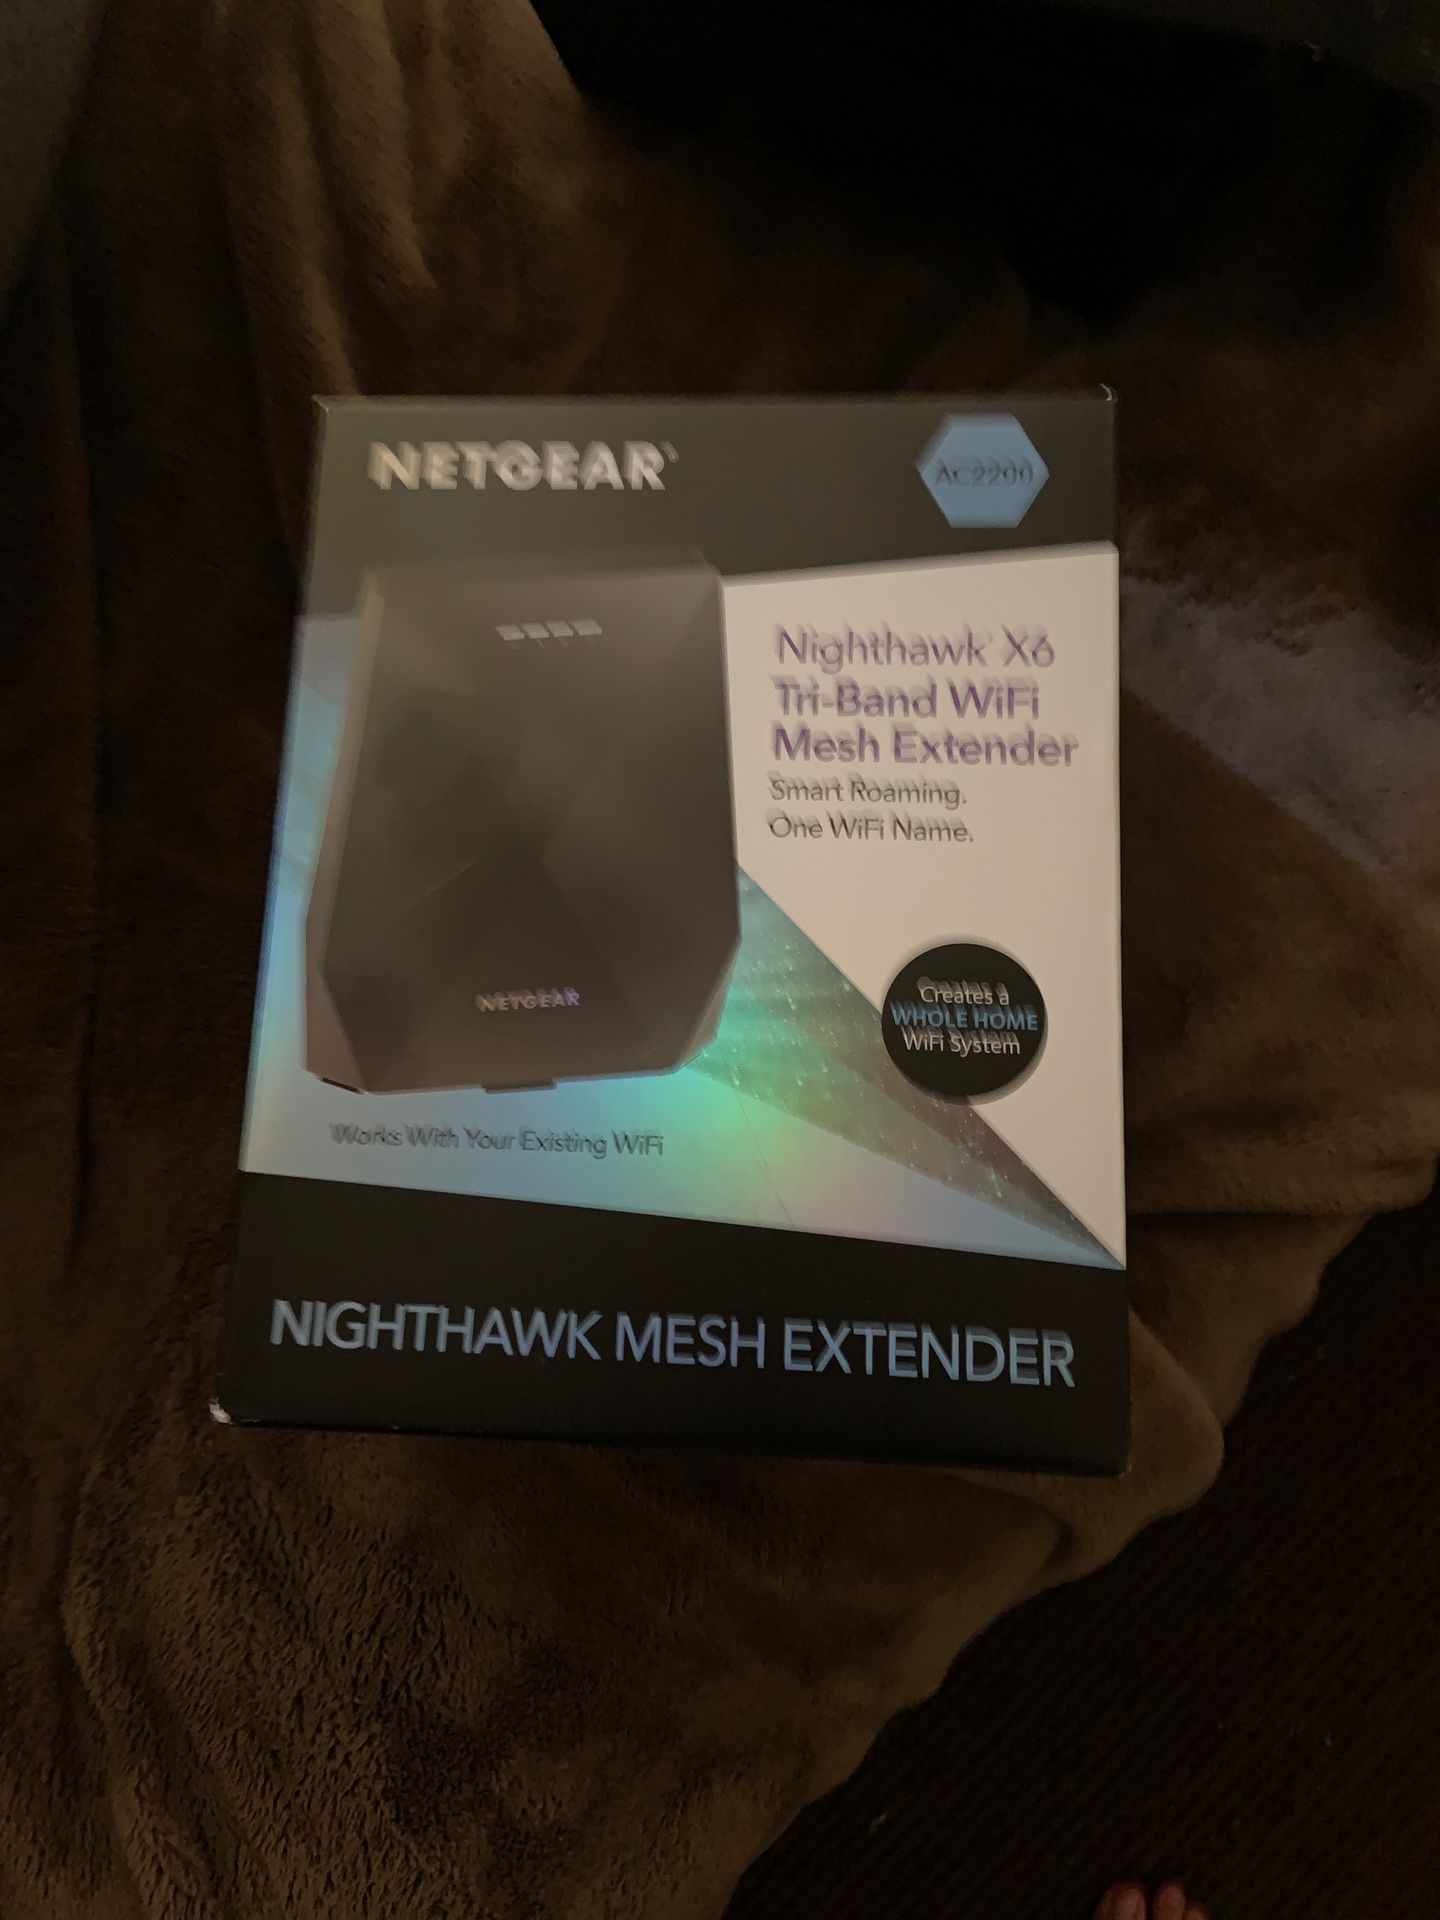 Nighthawk mesh extender